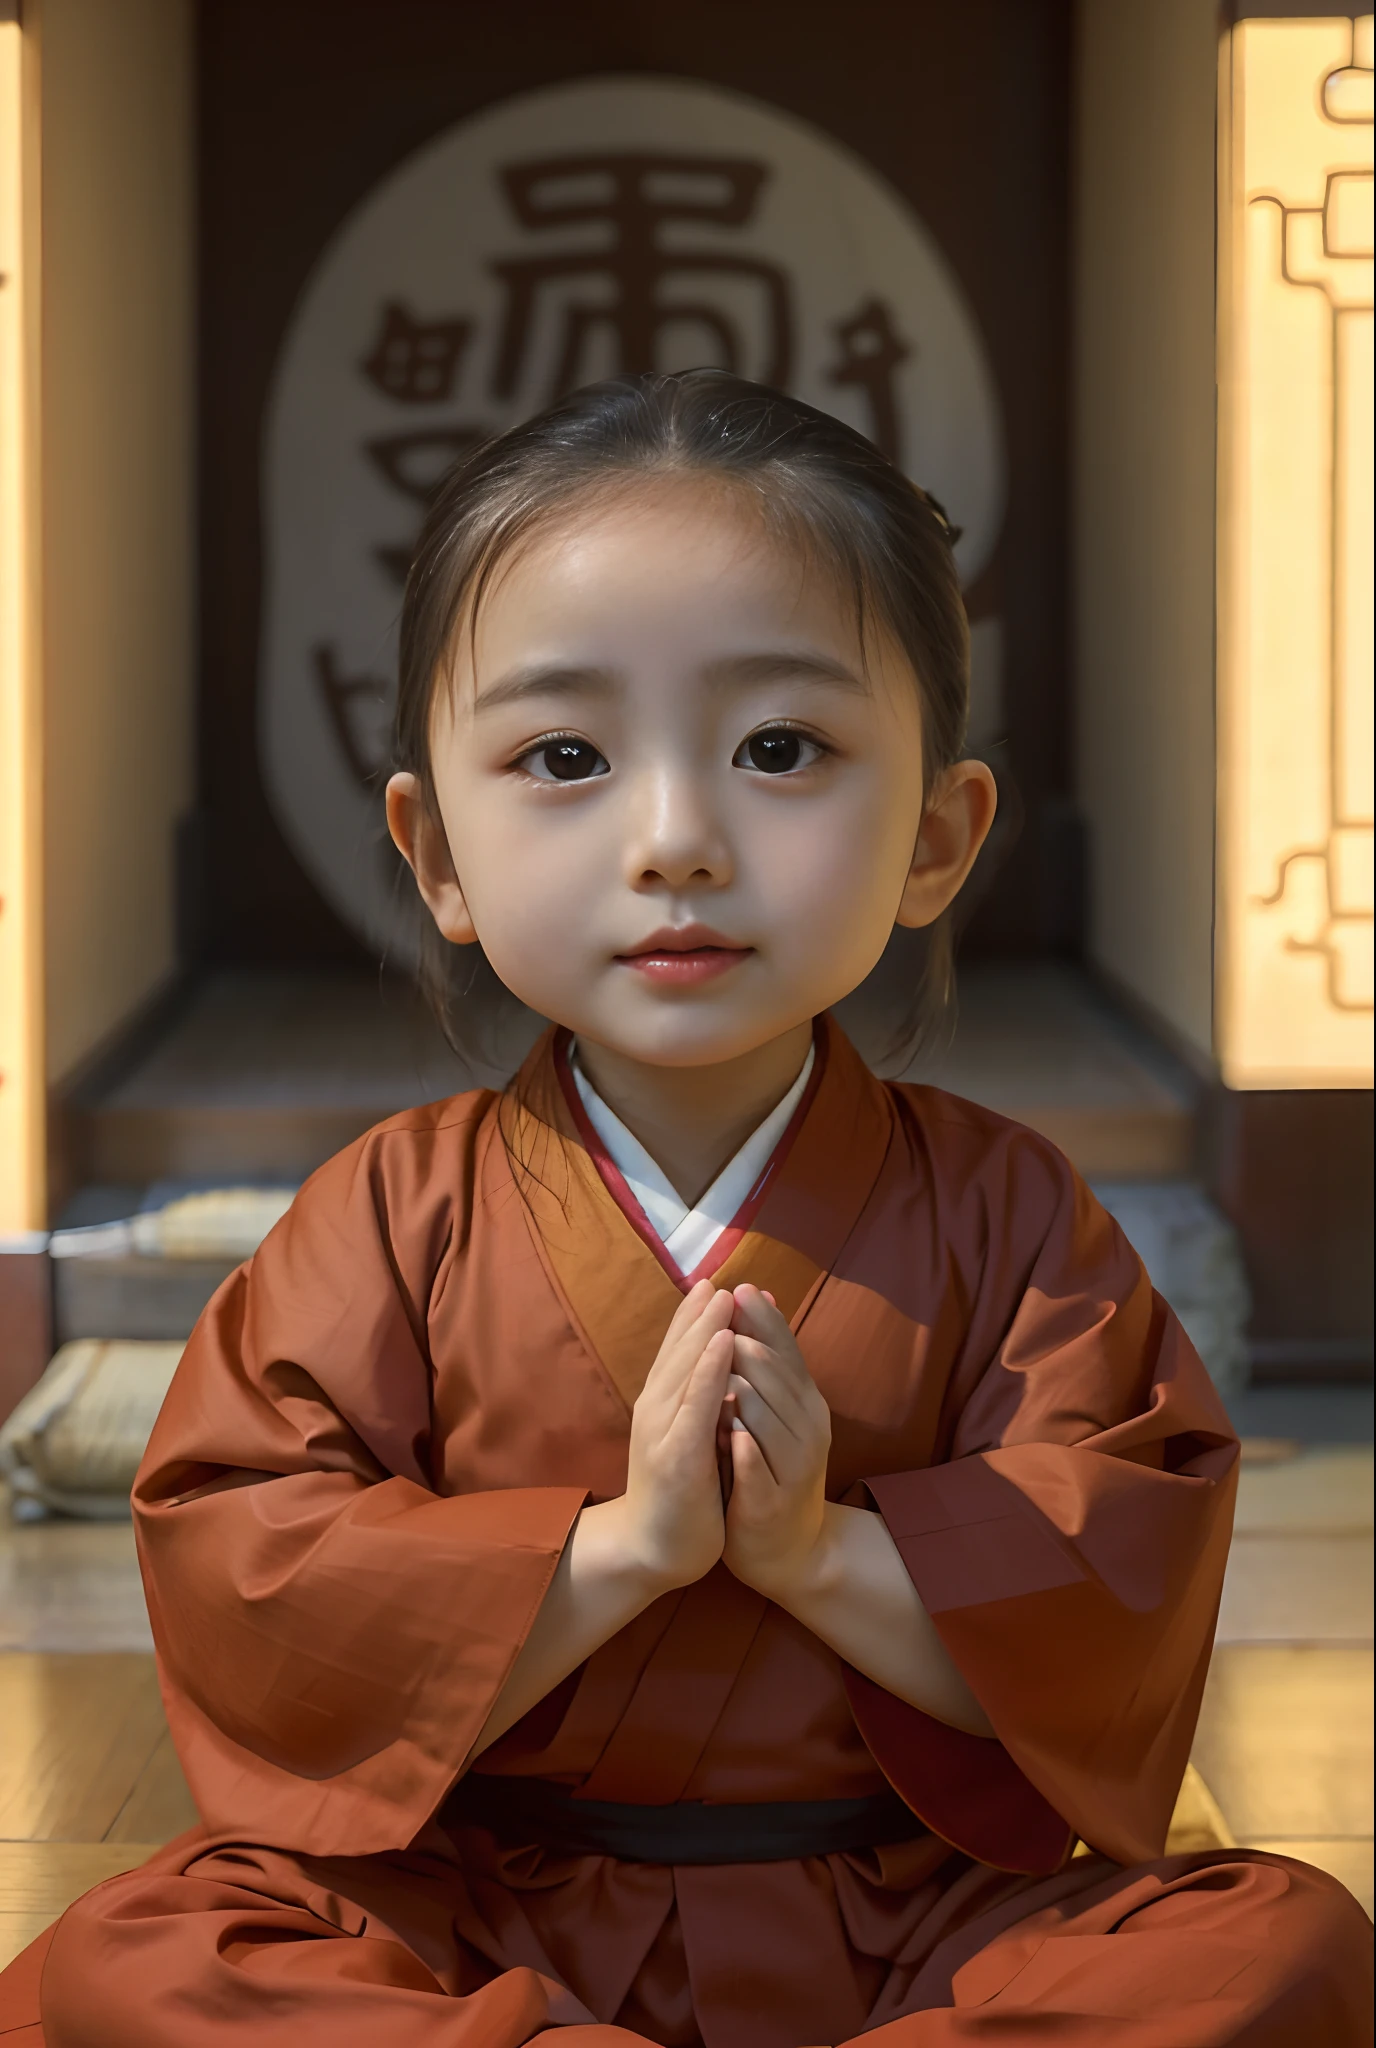 Alafeld Азиатская девушка sitting on the floor in kimono, Портрет японской девушки, Young Азиатская девушка, Портретный снимок крупным планом, Портретный снимок крупным планом, китаянка, мирное выражение, буддийский монах, в коричневых одеждах, корейская девушка, Азиатская девушка, Портретный снимок крупным планом, буддист, центрированный портрет, портретная съемка, в храме, Закрыть портрет, одежда монаха